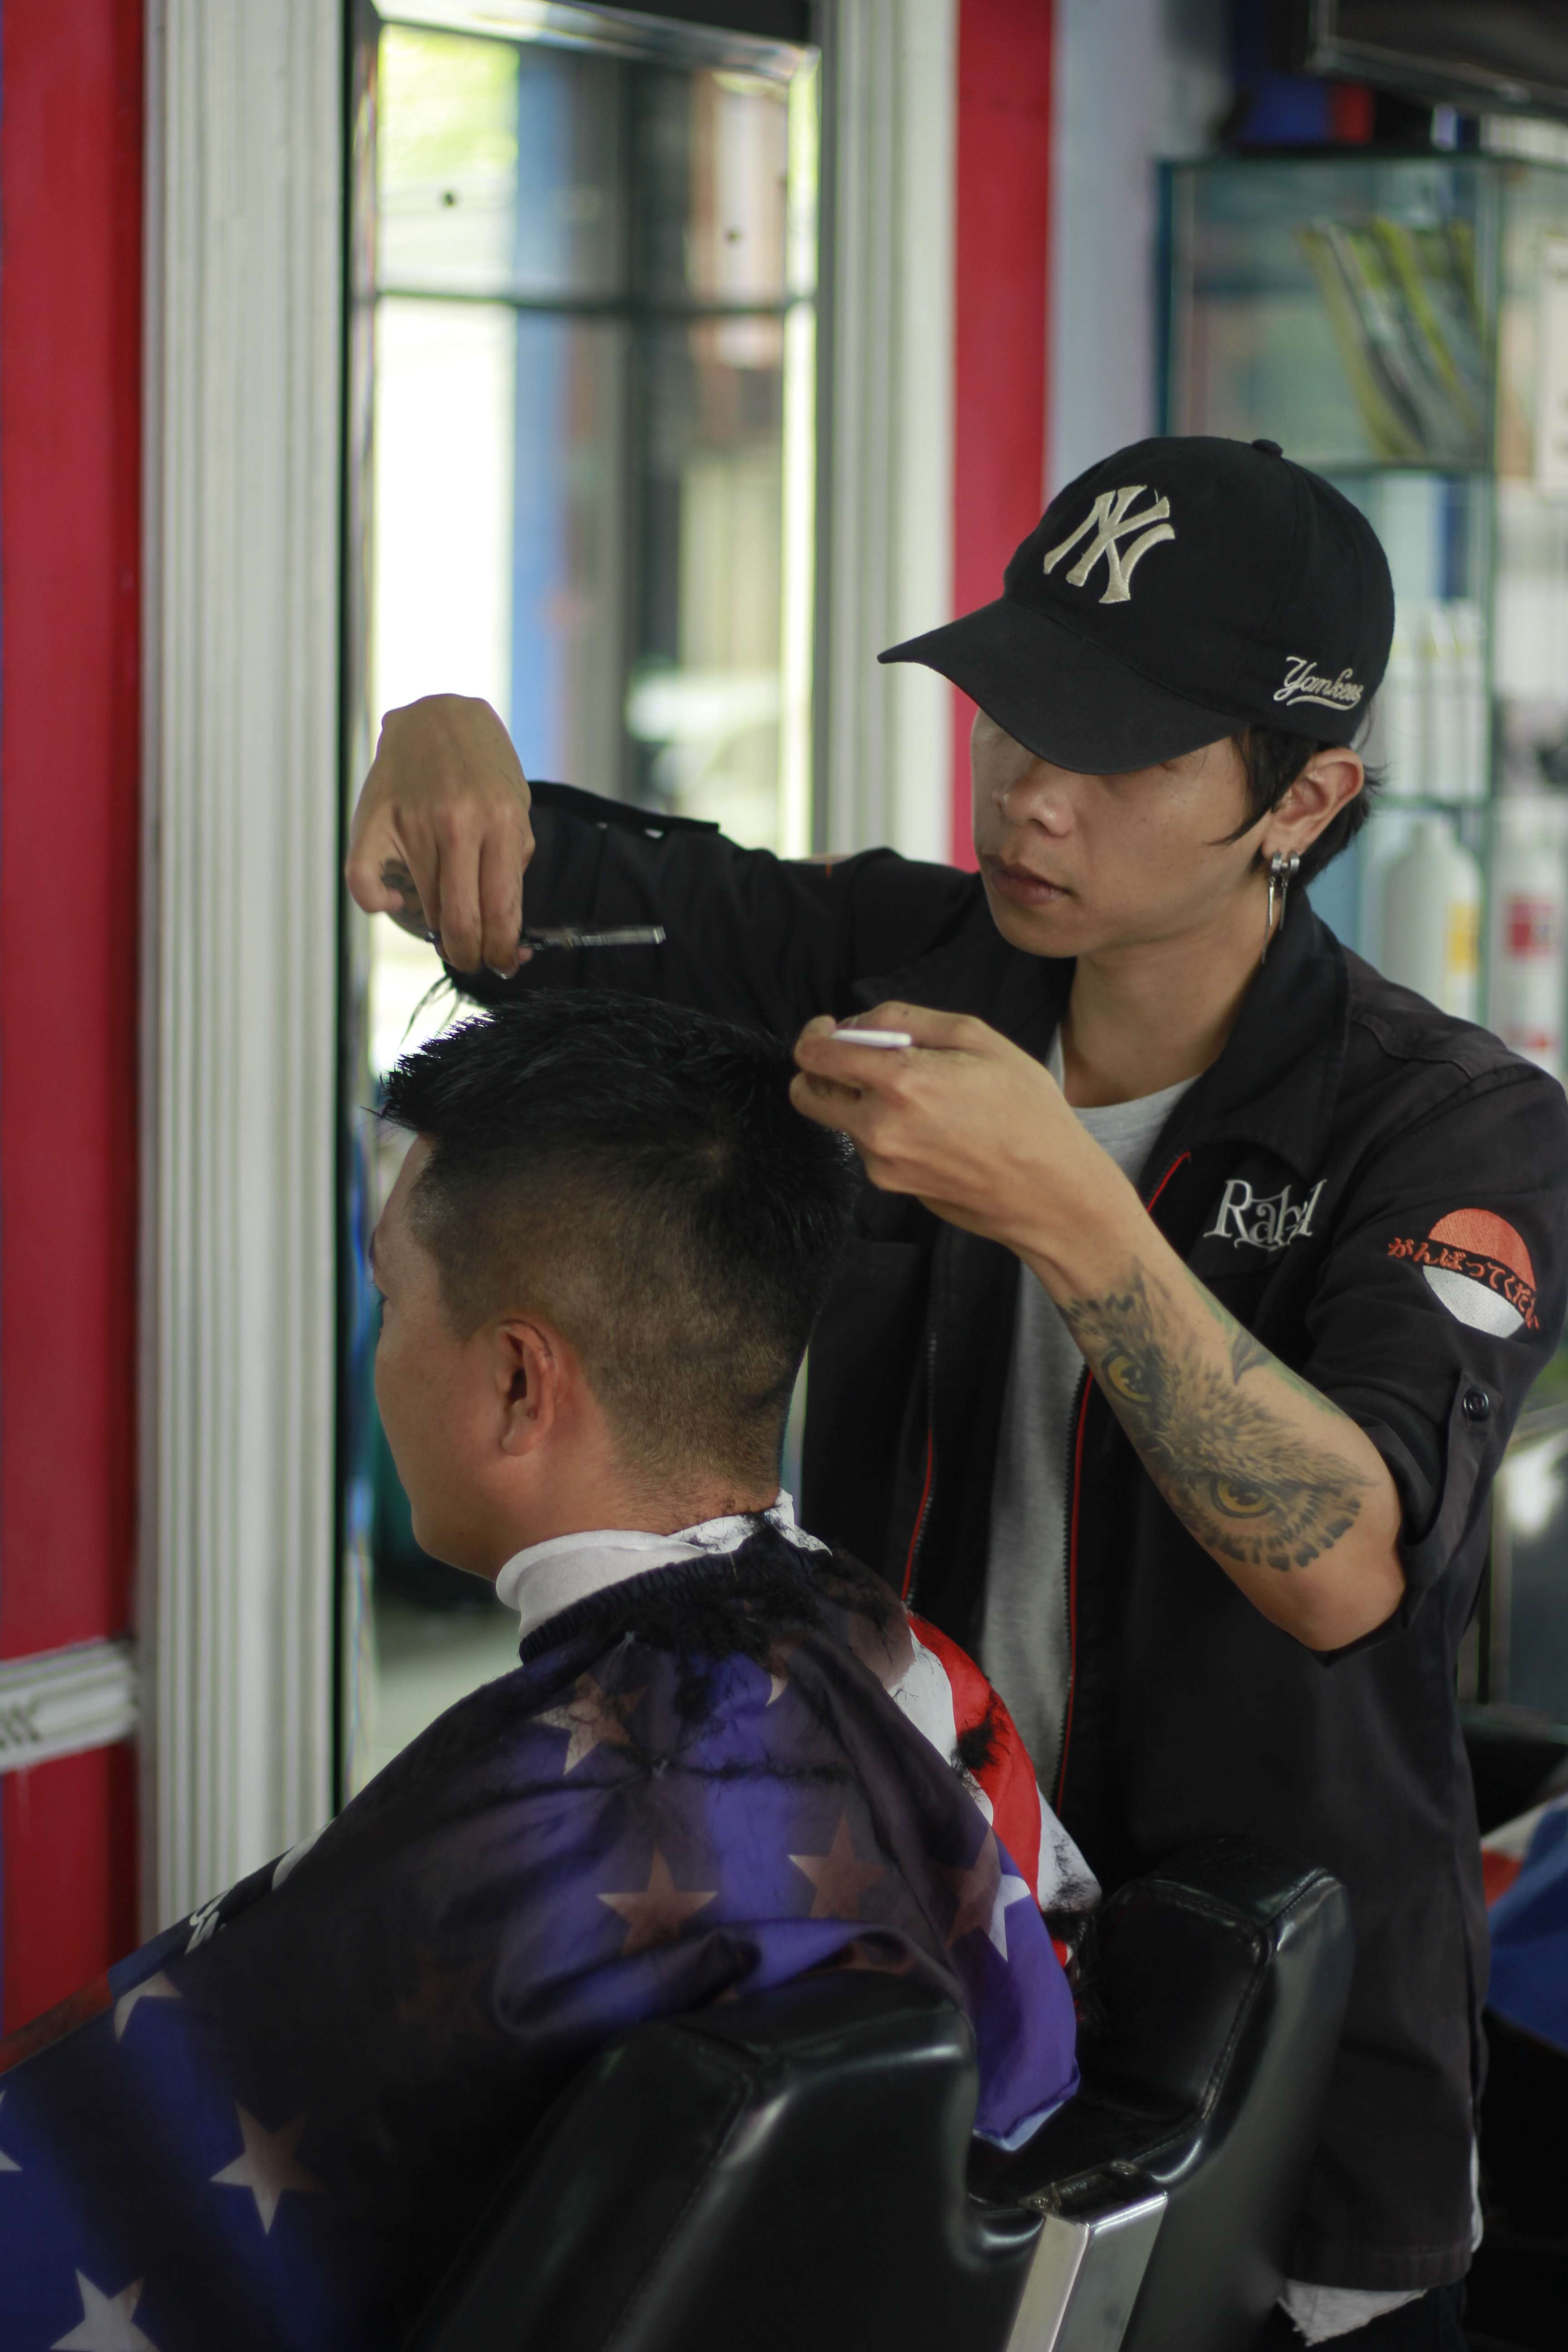 Harga Cukur Rambut Di Kota Malang Profesional